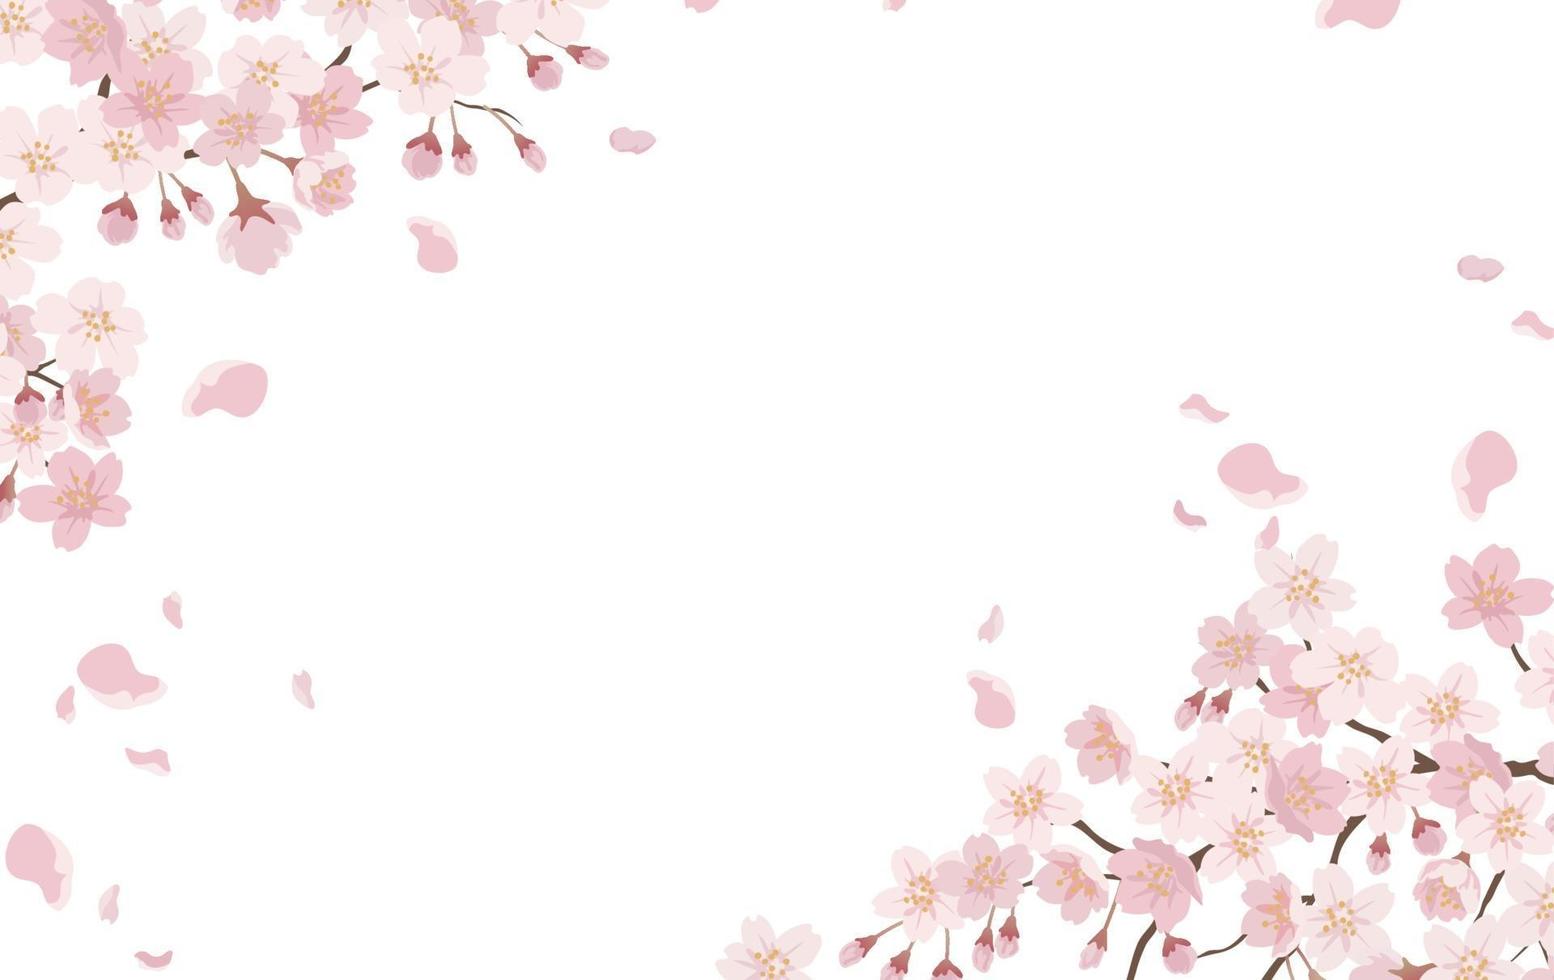 fundo floral com flores de cerejeira em plena floração isolado em um fundo branco. vetor